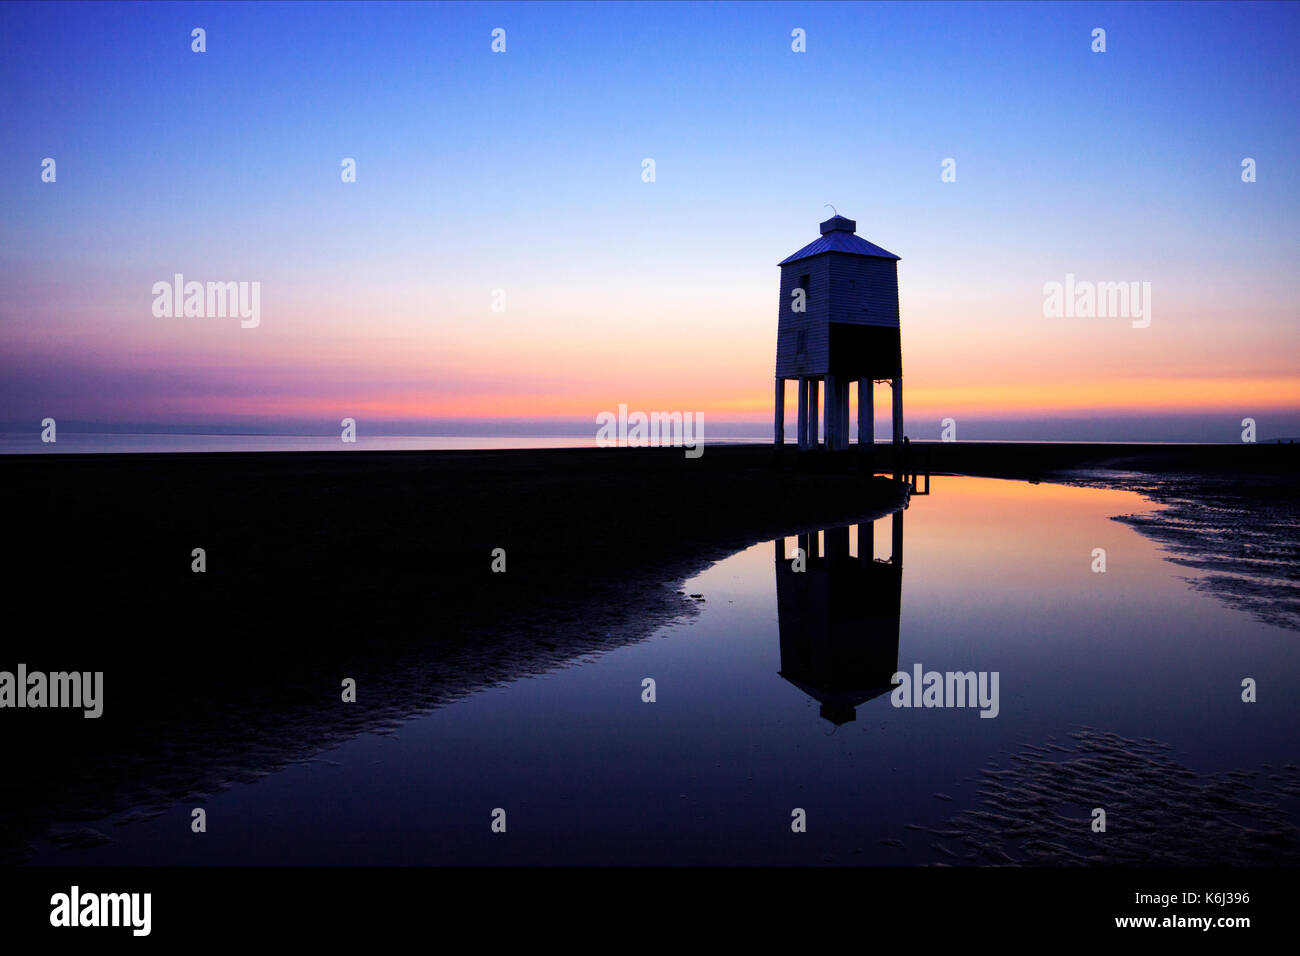 Der Burnham-on-Sea, Großbritannien niedrig Leuchtturm in der Dämmerung kurz nach Sonnenuntergang. In einem großen Pool mit Meerwasser am Strand nieder. Eine bunte, ruhige Szene Stockfoto